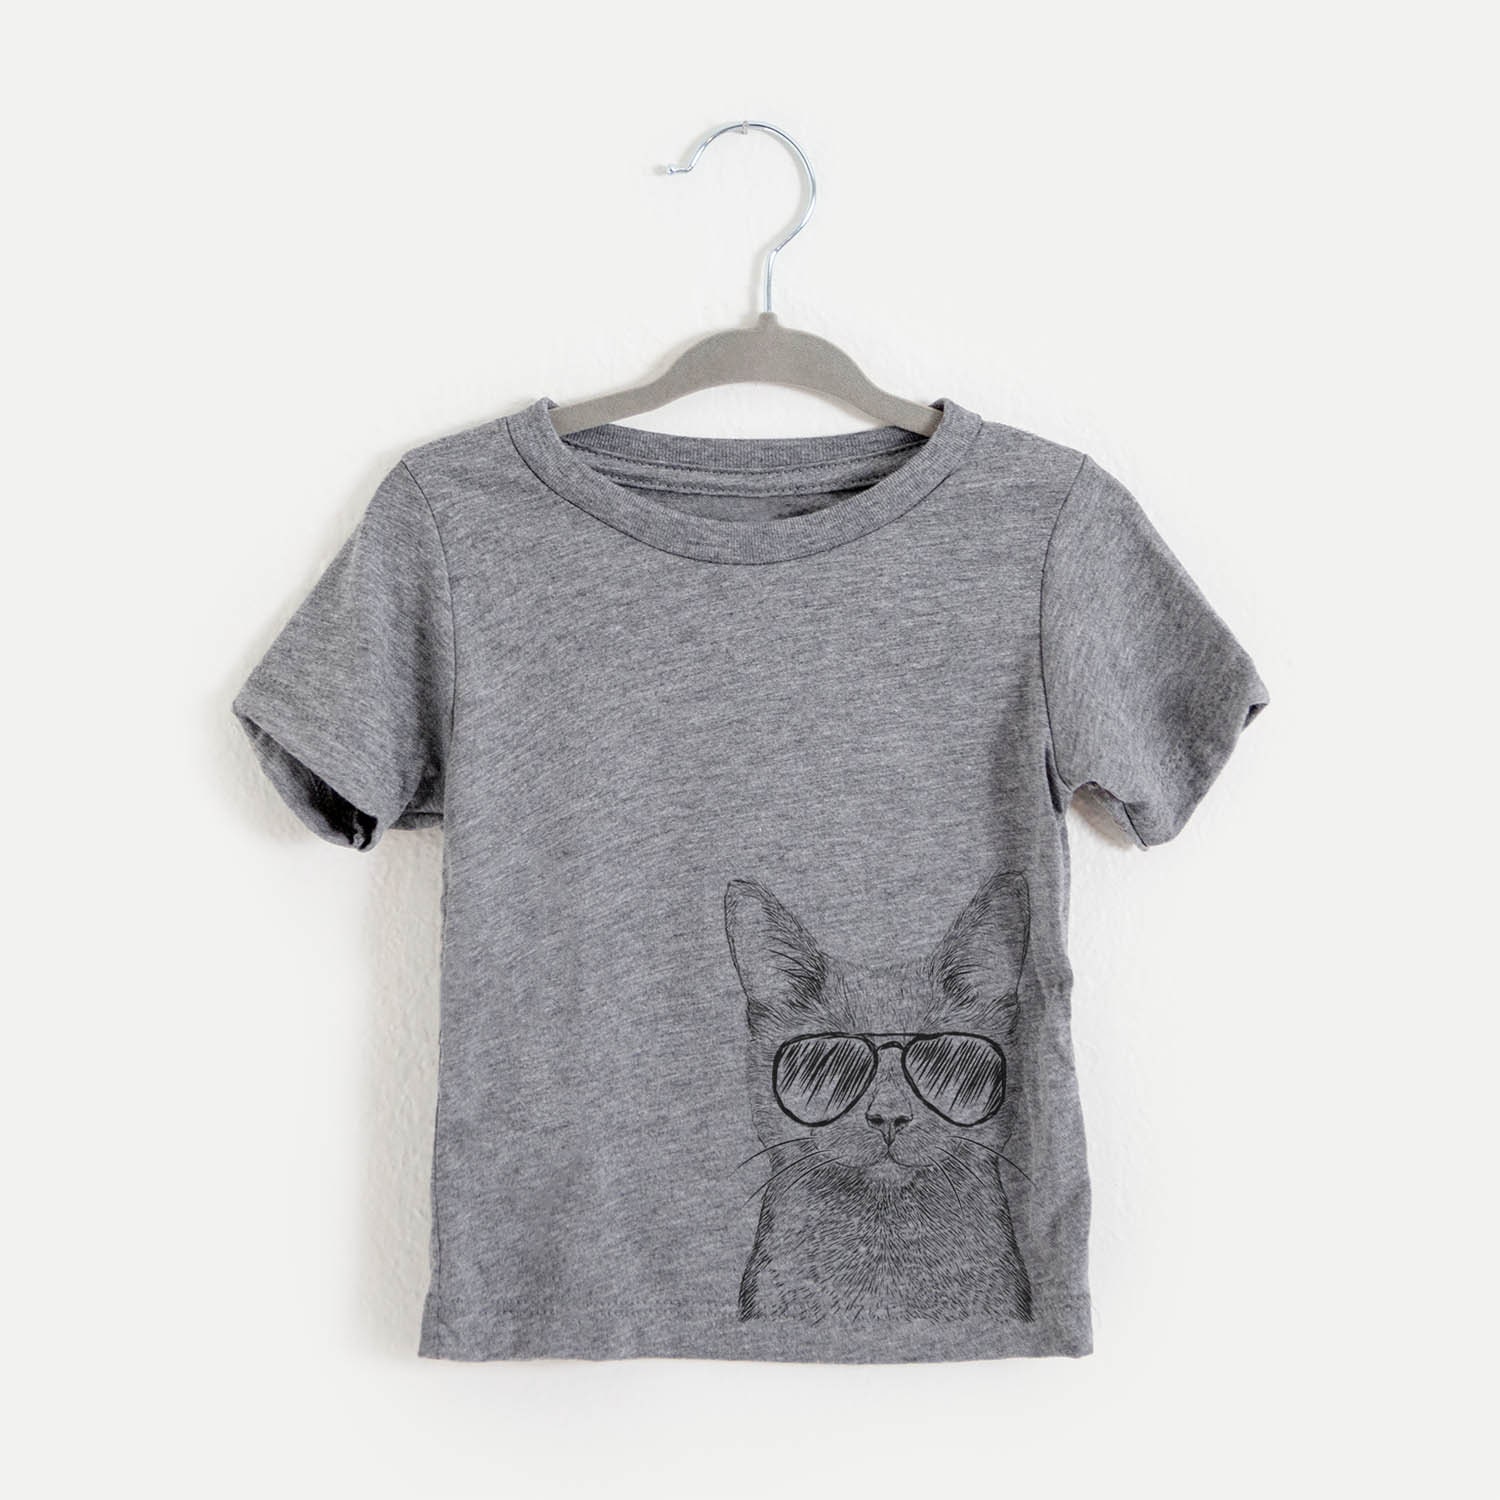 Shadow The Black Cat - Tri-Blend Shirt Kids Tshirt Animal Glasses T